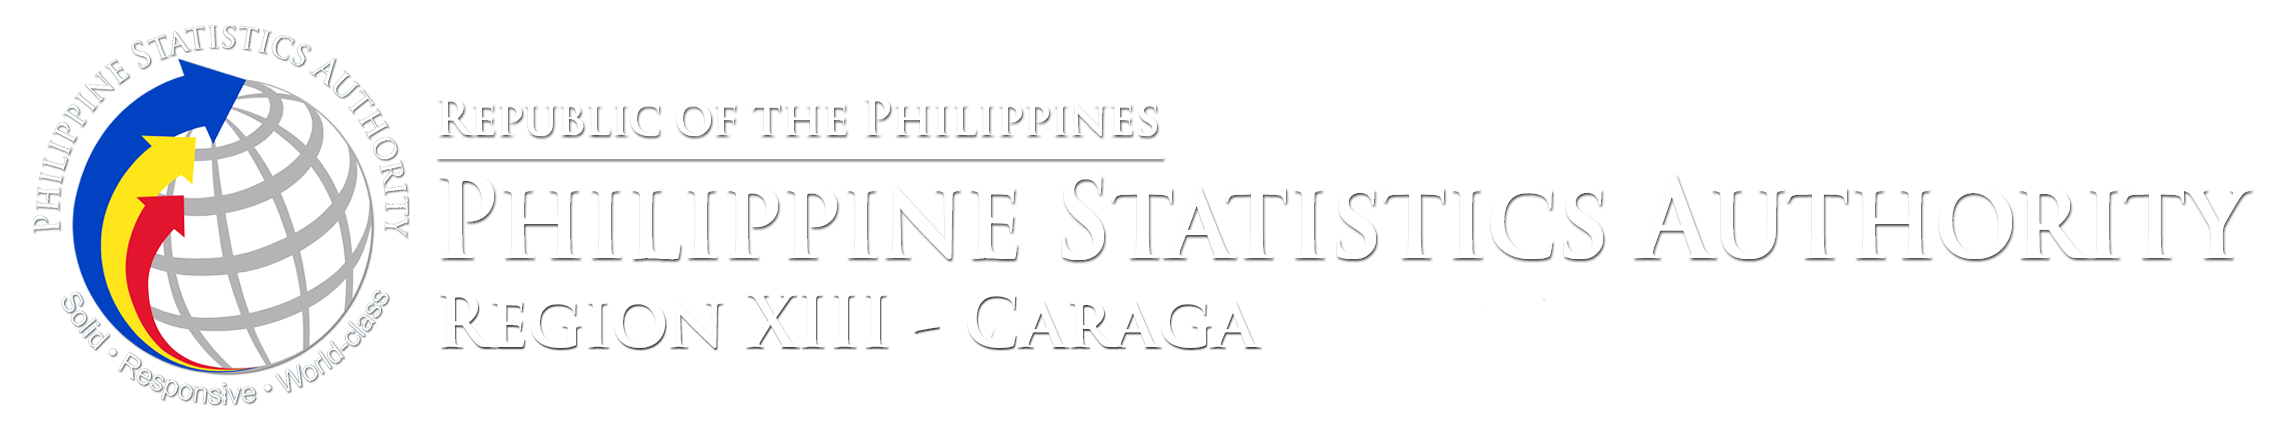 Philippine Statistics Authority Region XIII (Caraga)